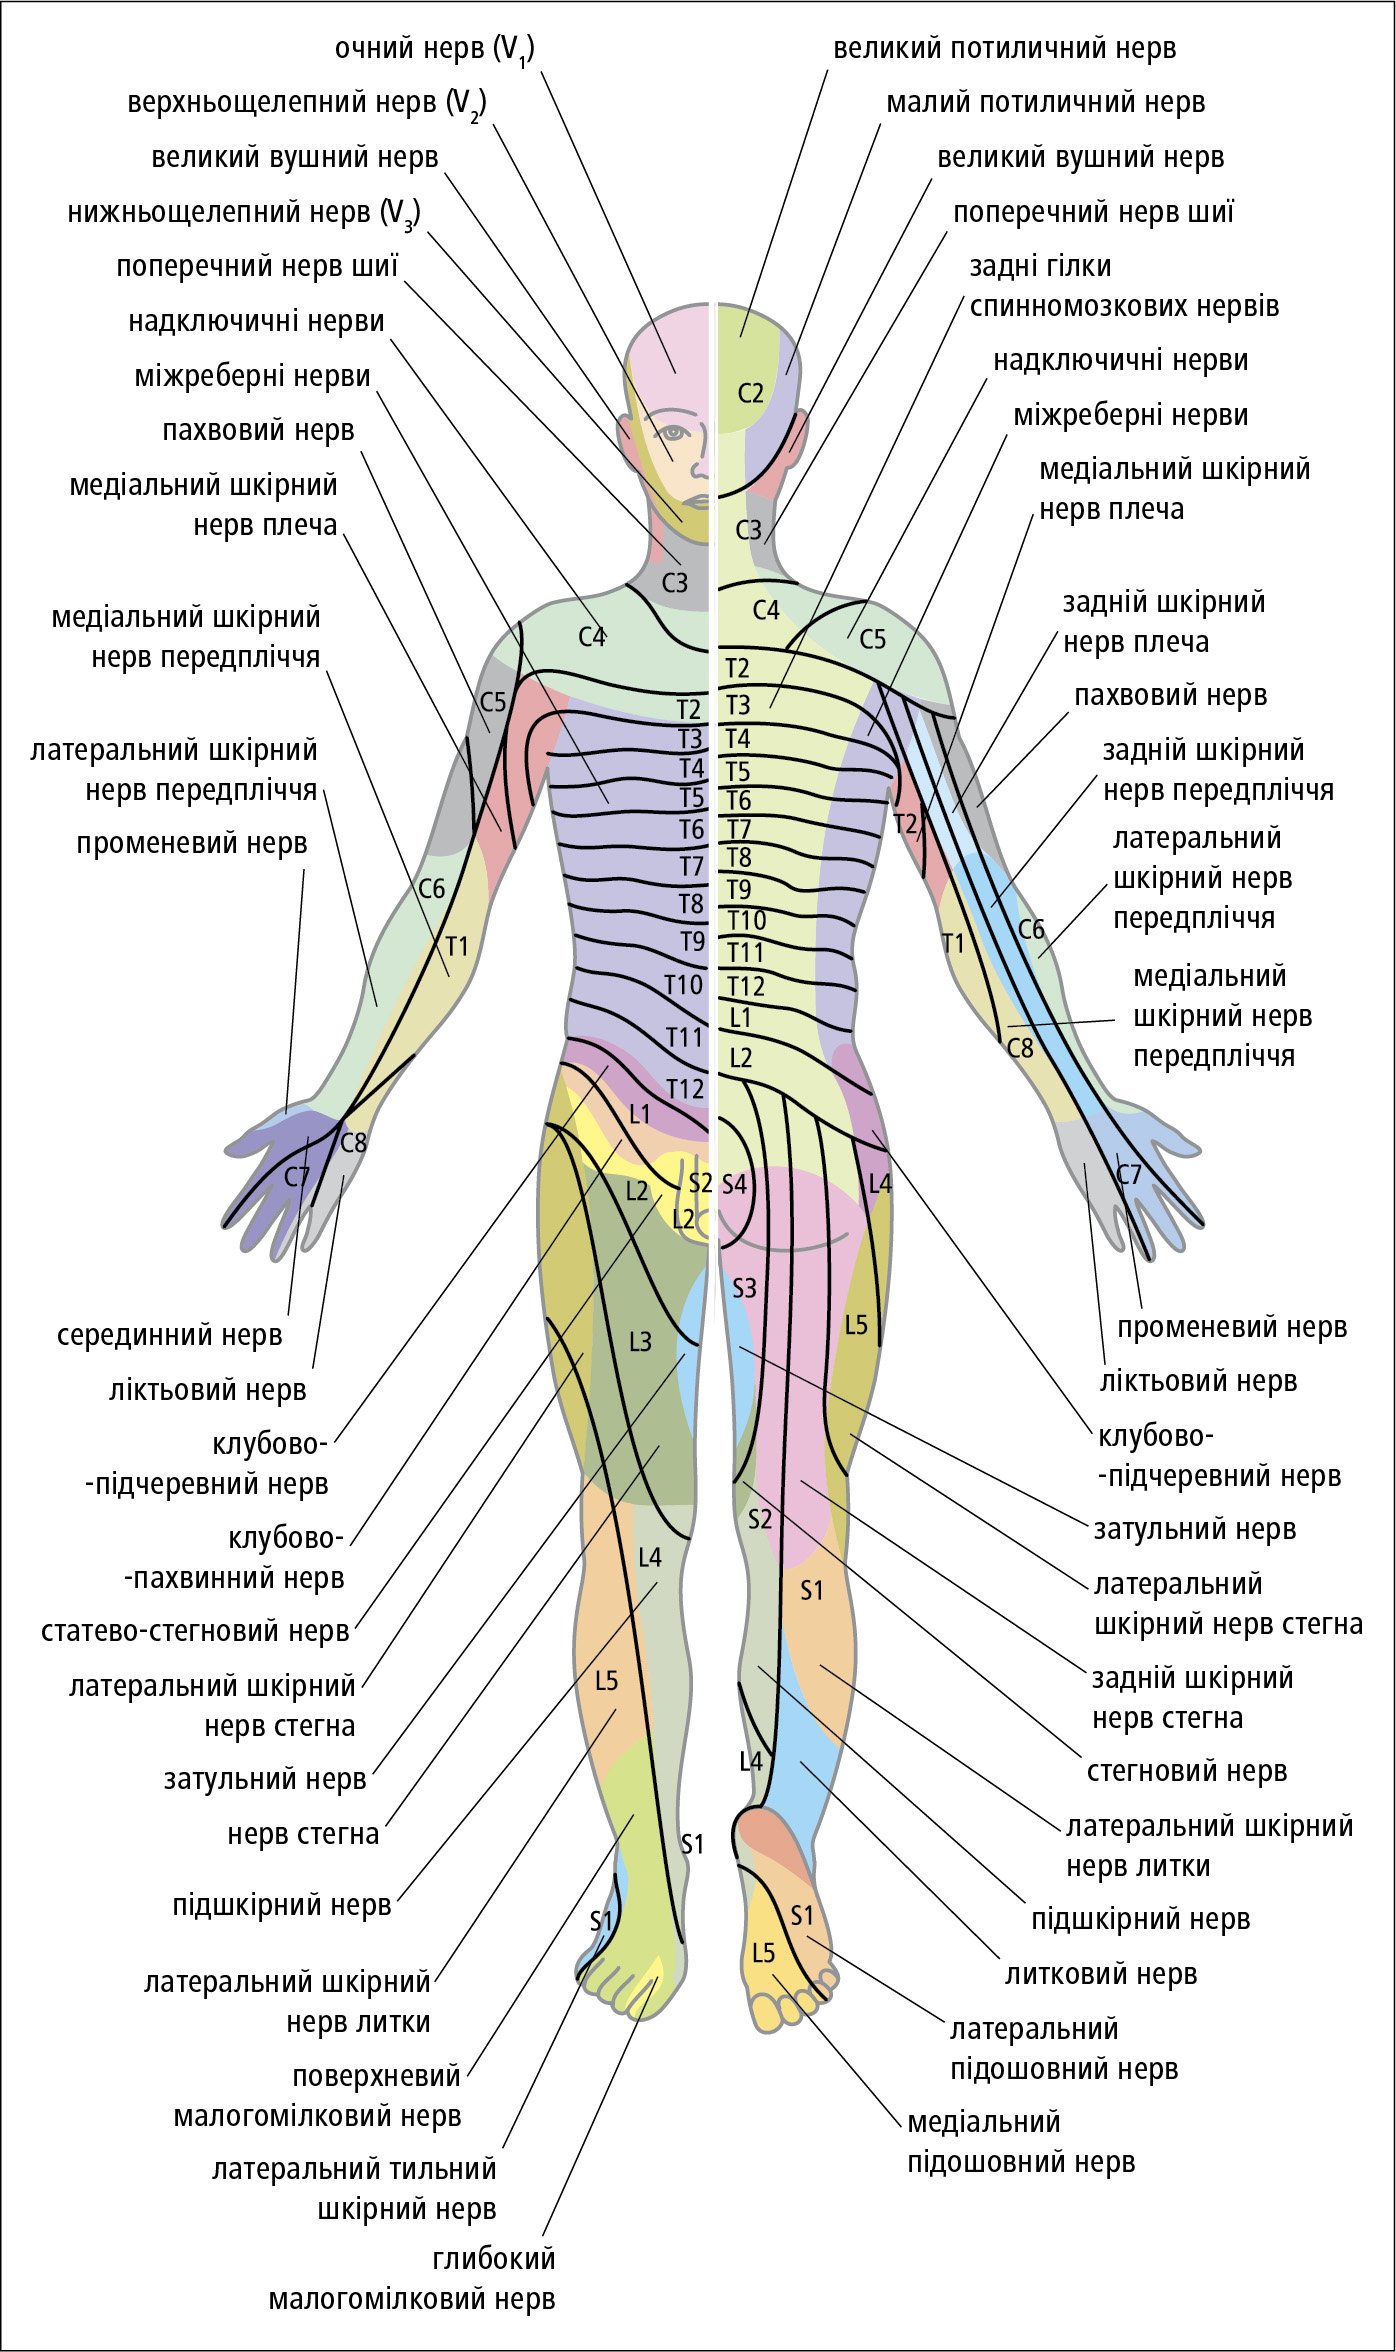 Сегментарна іннервація шкіри та ділянки шкірної іннервації нервів